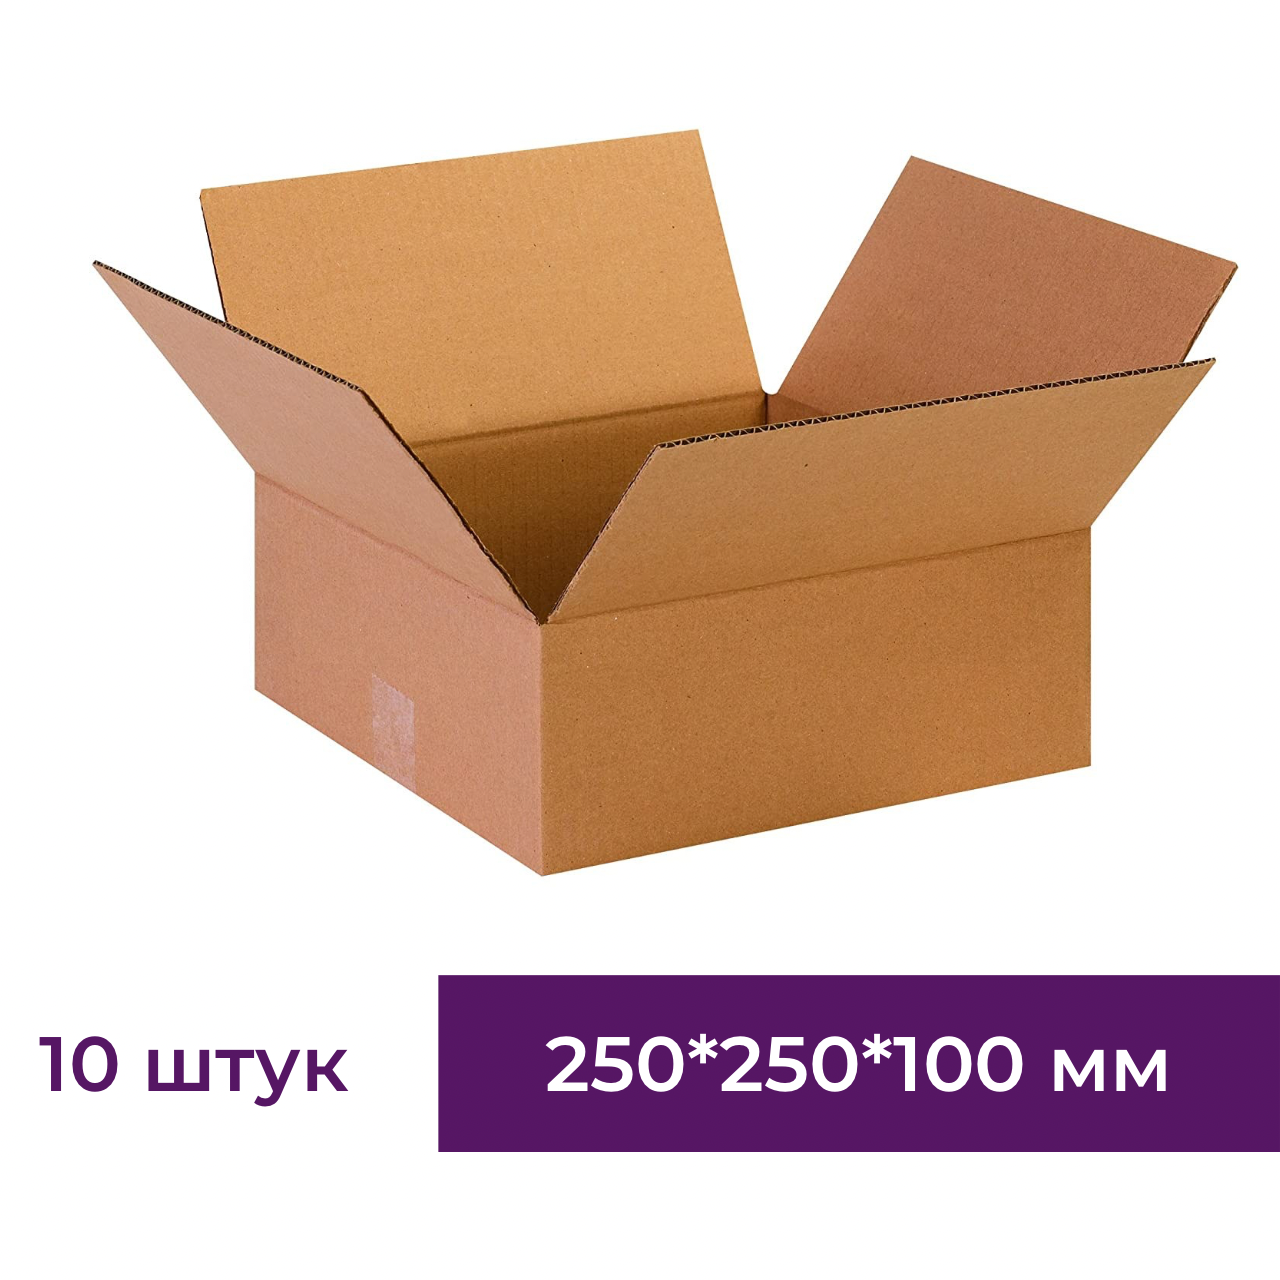 Картонная коробка из микрогорокартона, 250*250*100 мм, упаковка товаров, 10 шт